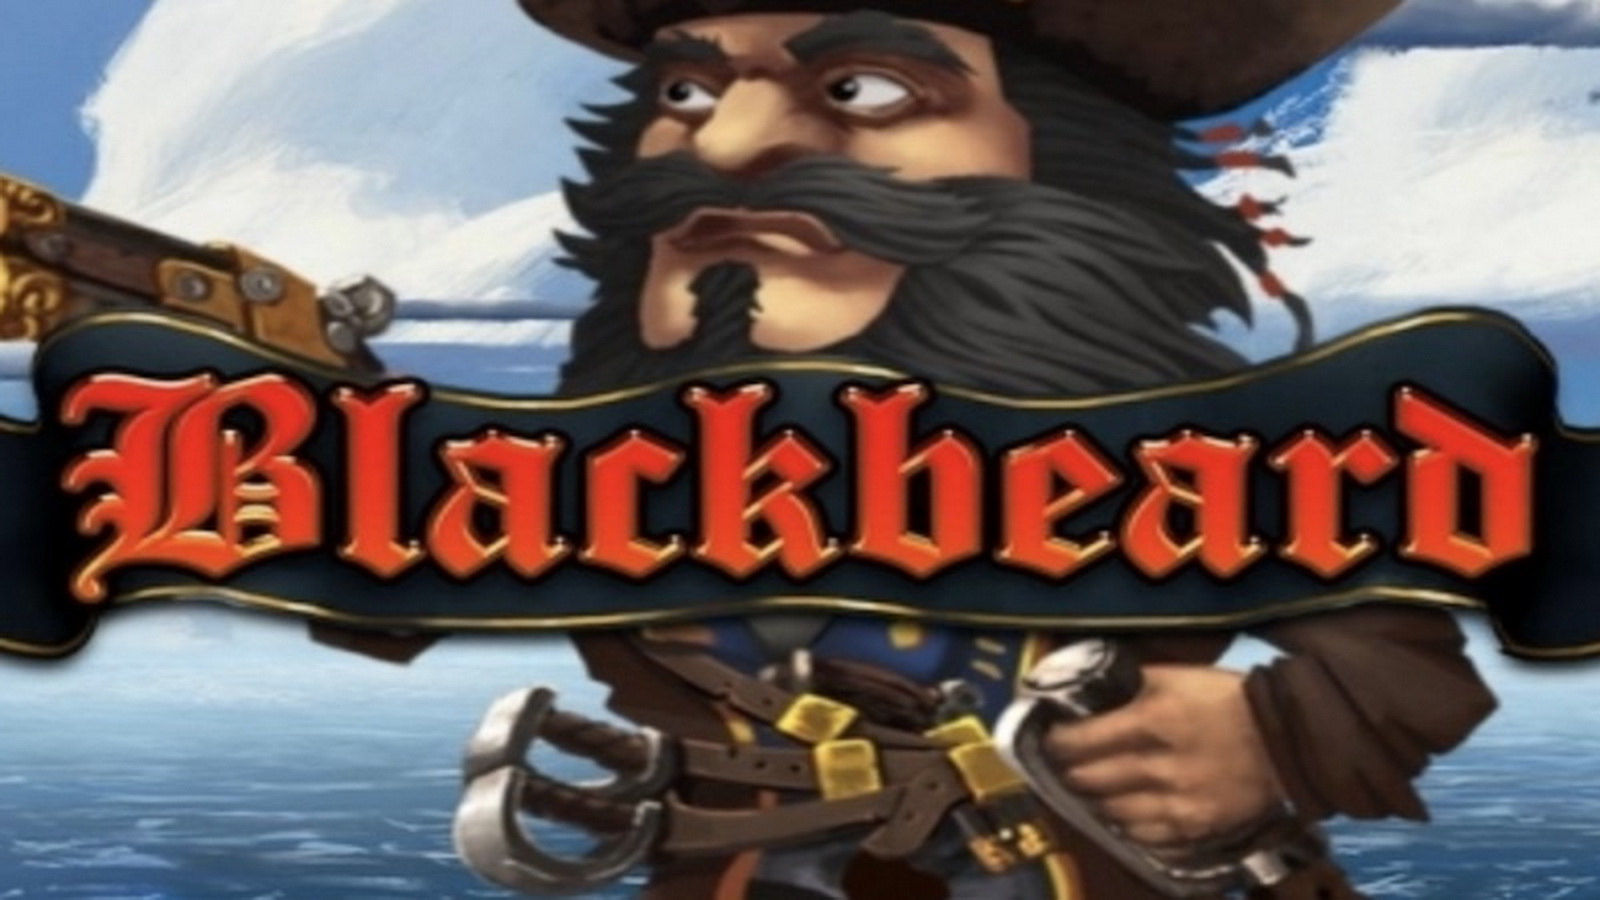 The Blackbeard Online Slot Demo Game by Bulletproof Games